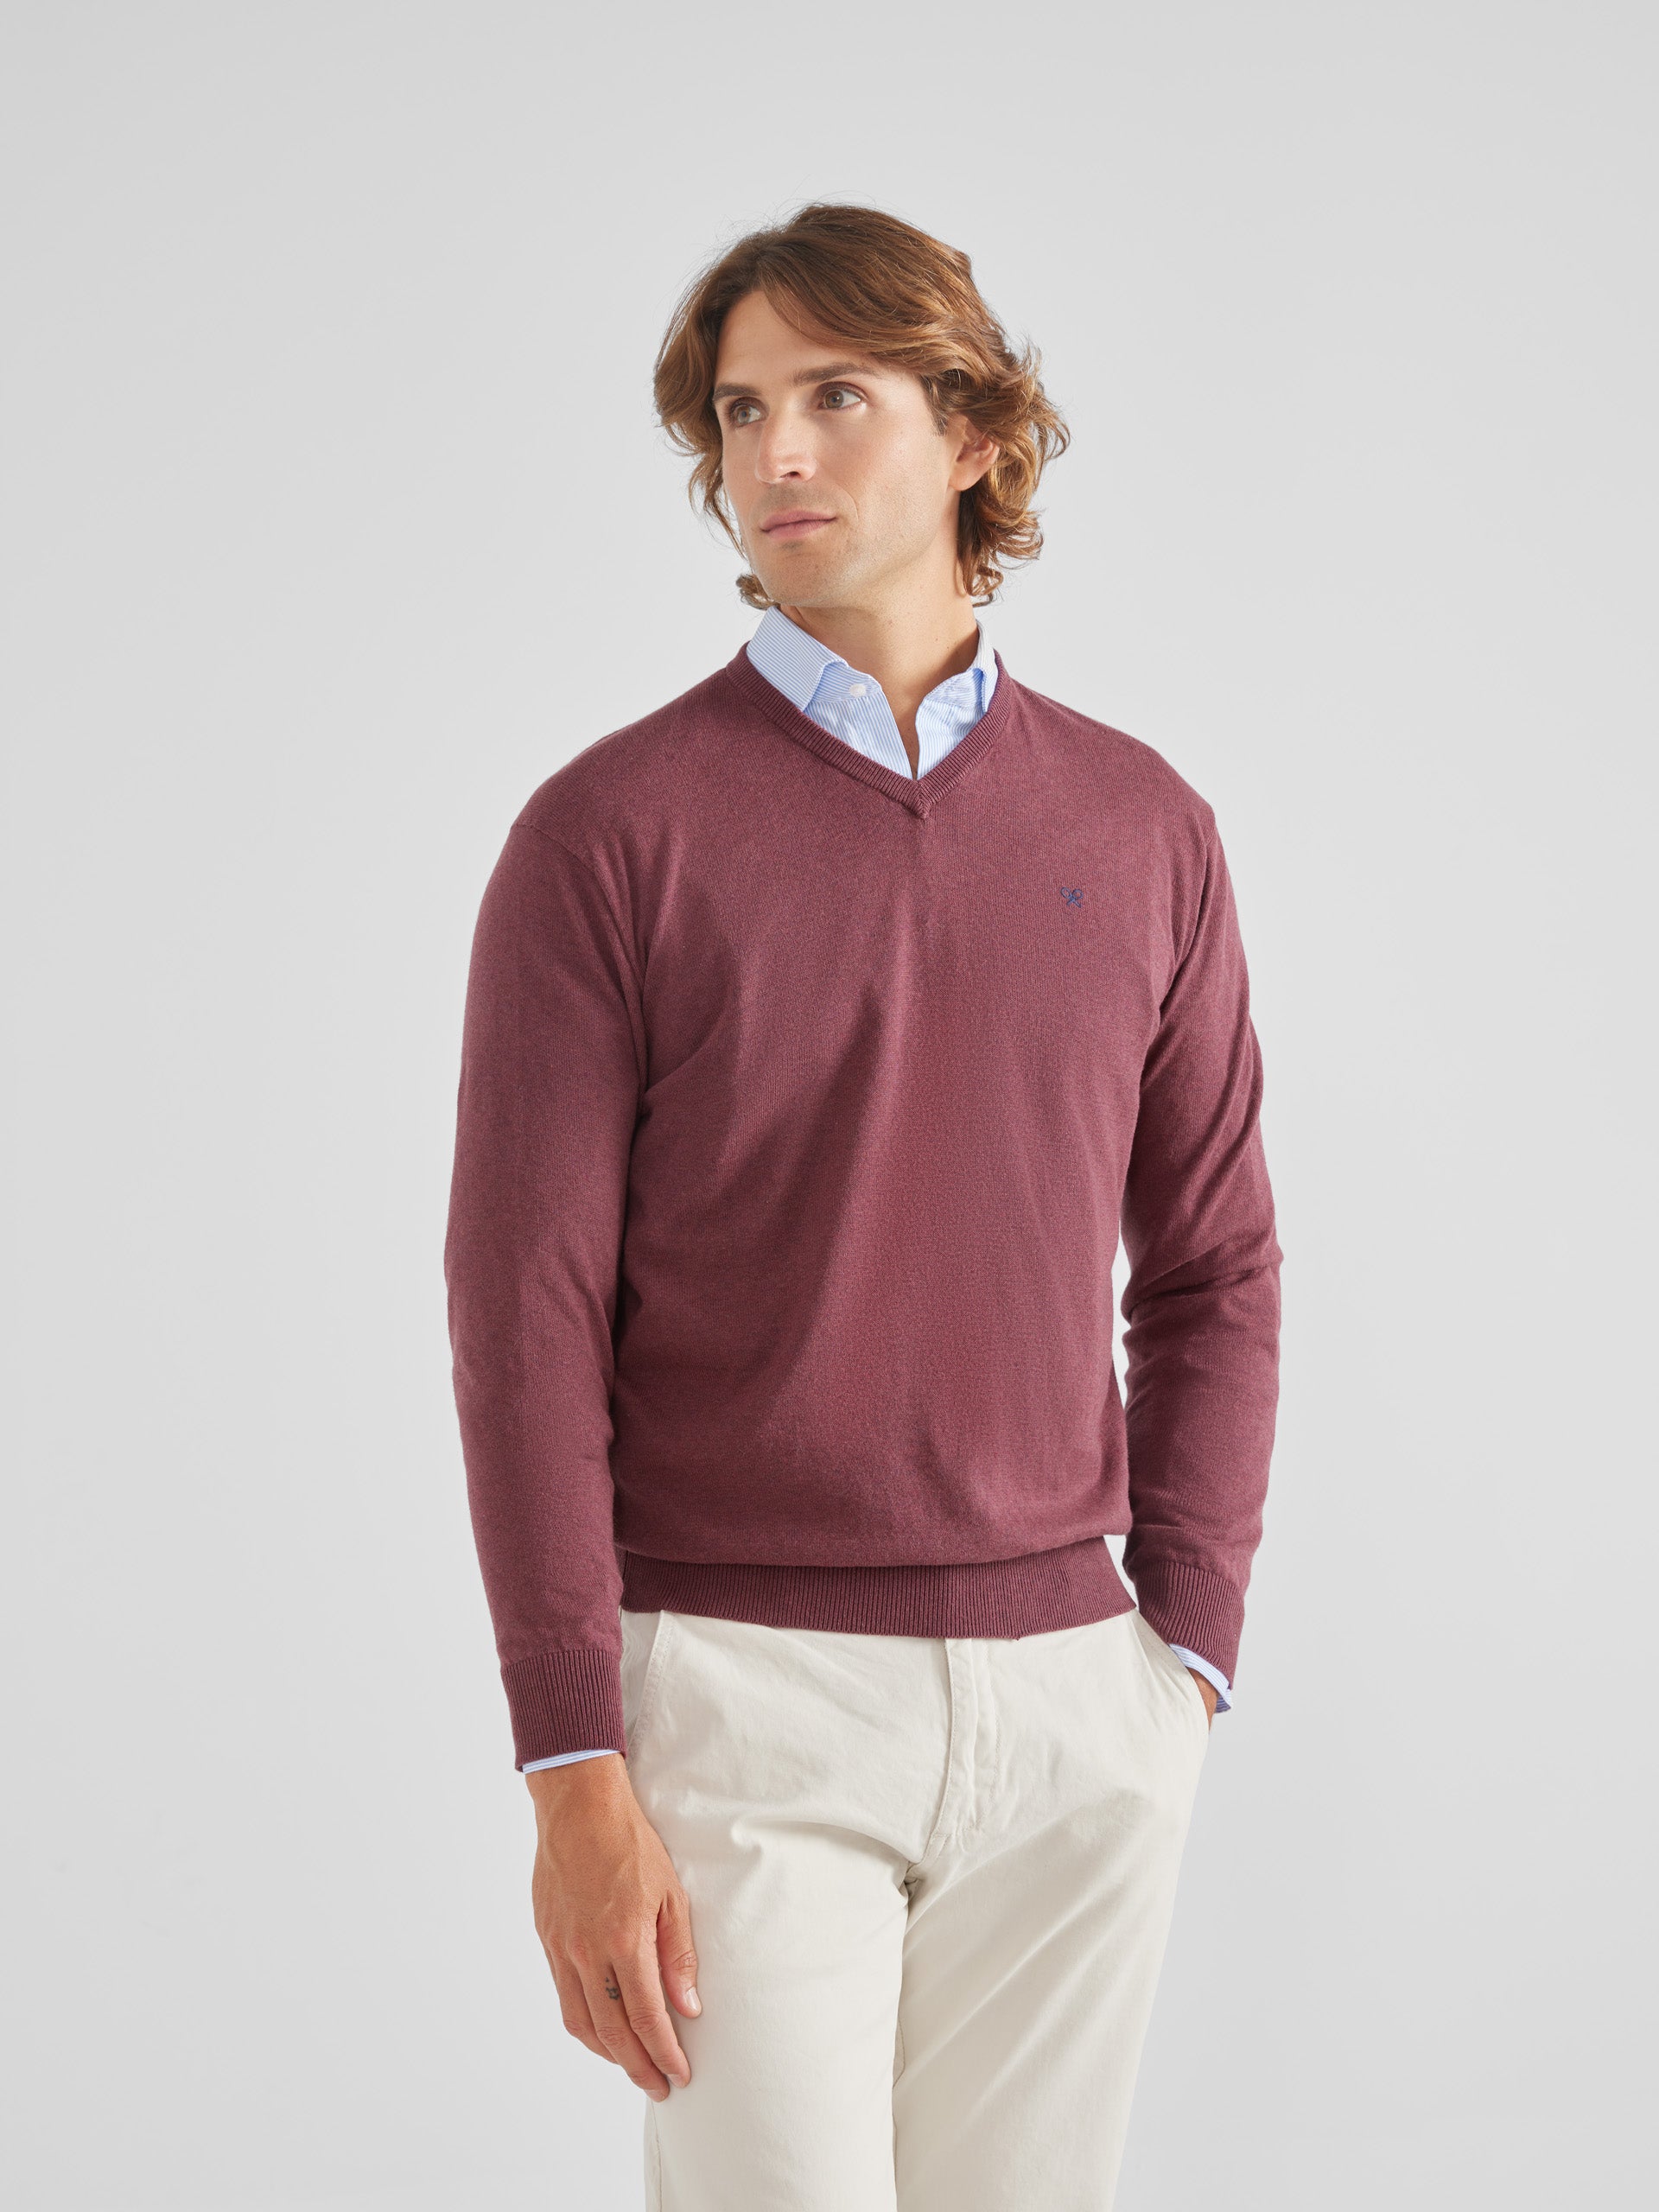 Plain burgundy V-neck sweater